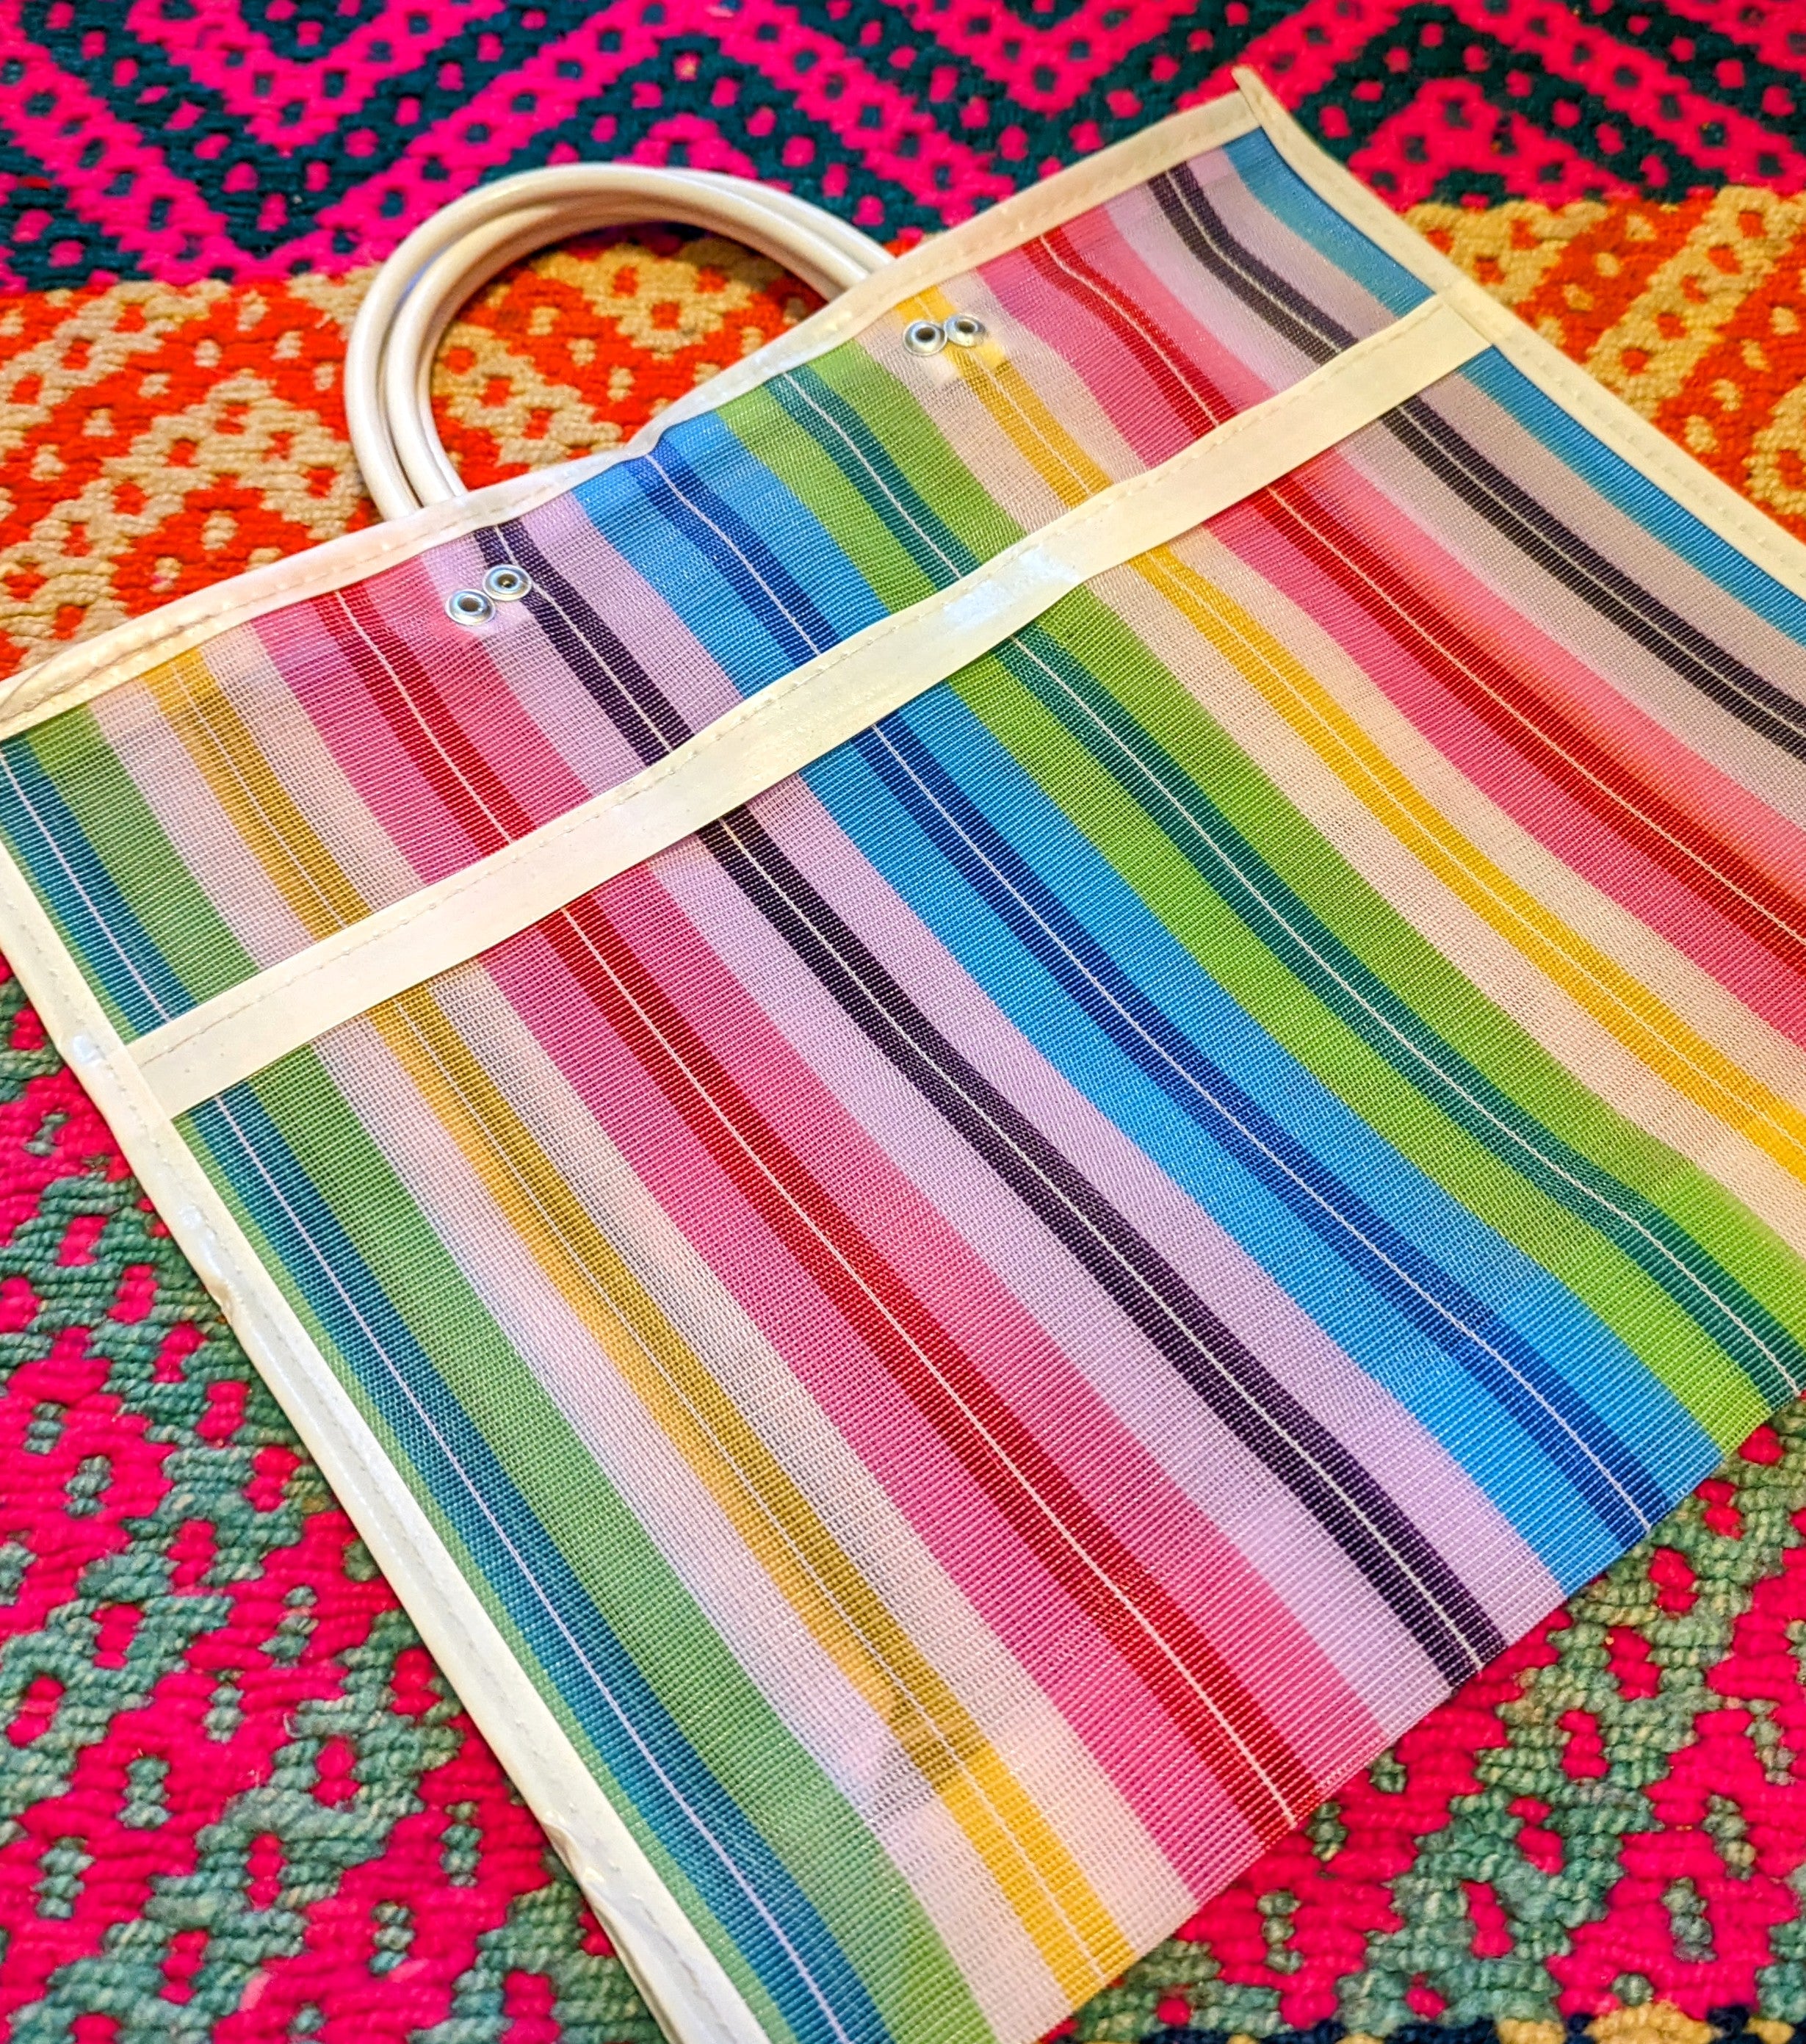 Mexican market bag - medium